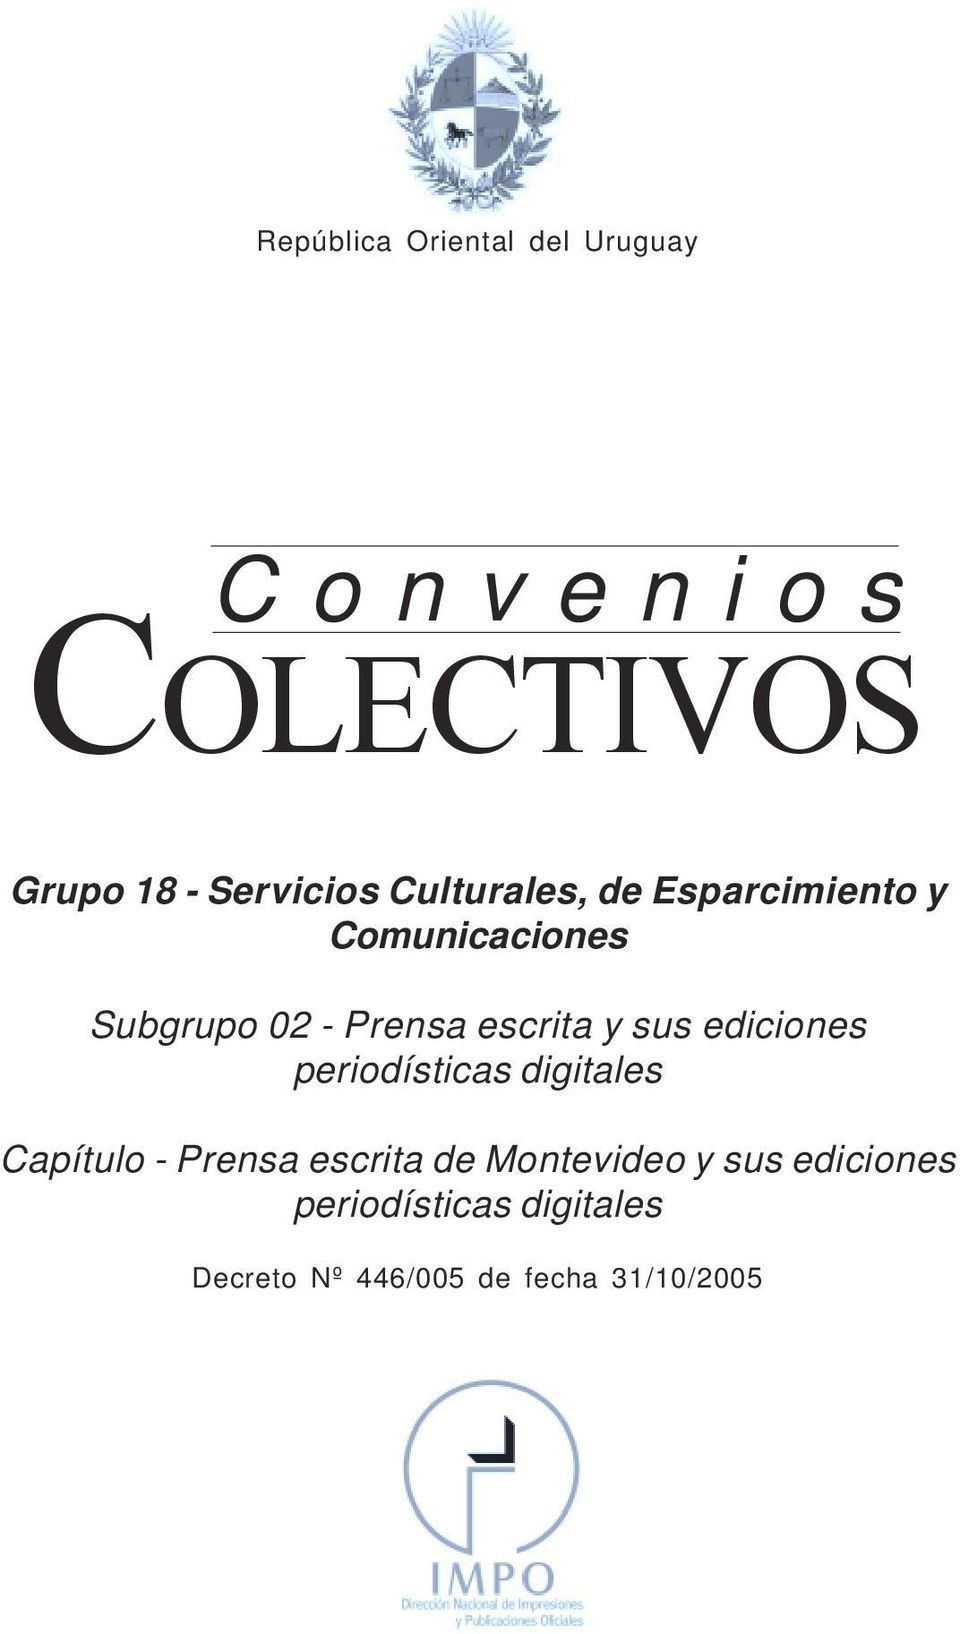 Esparcimiento y Comunicaciones Subgrupo 02 - Prensa escrita y sus ediciones periodísticas